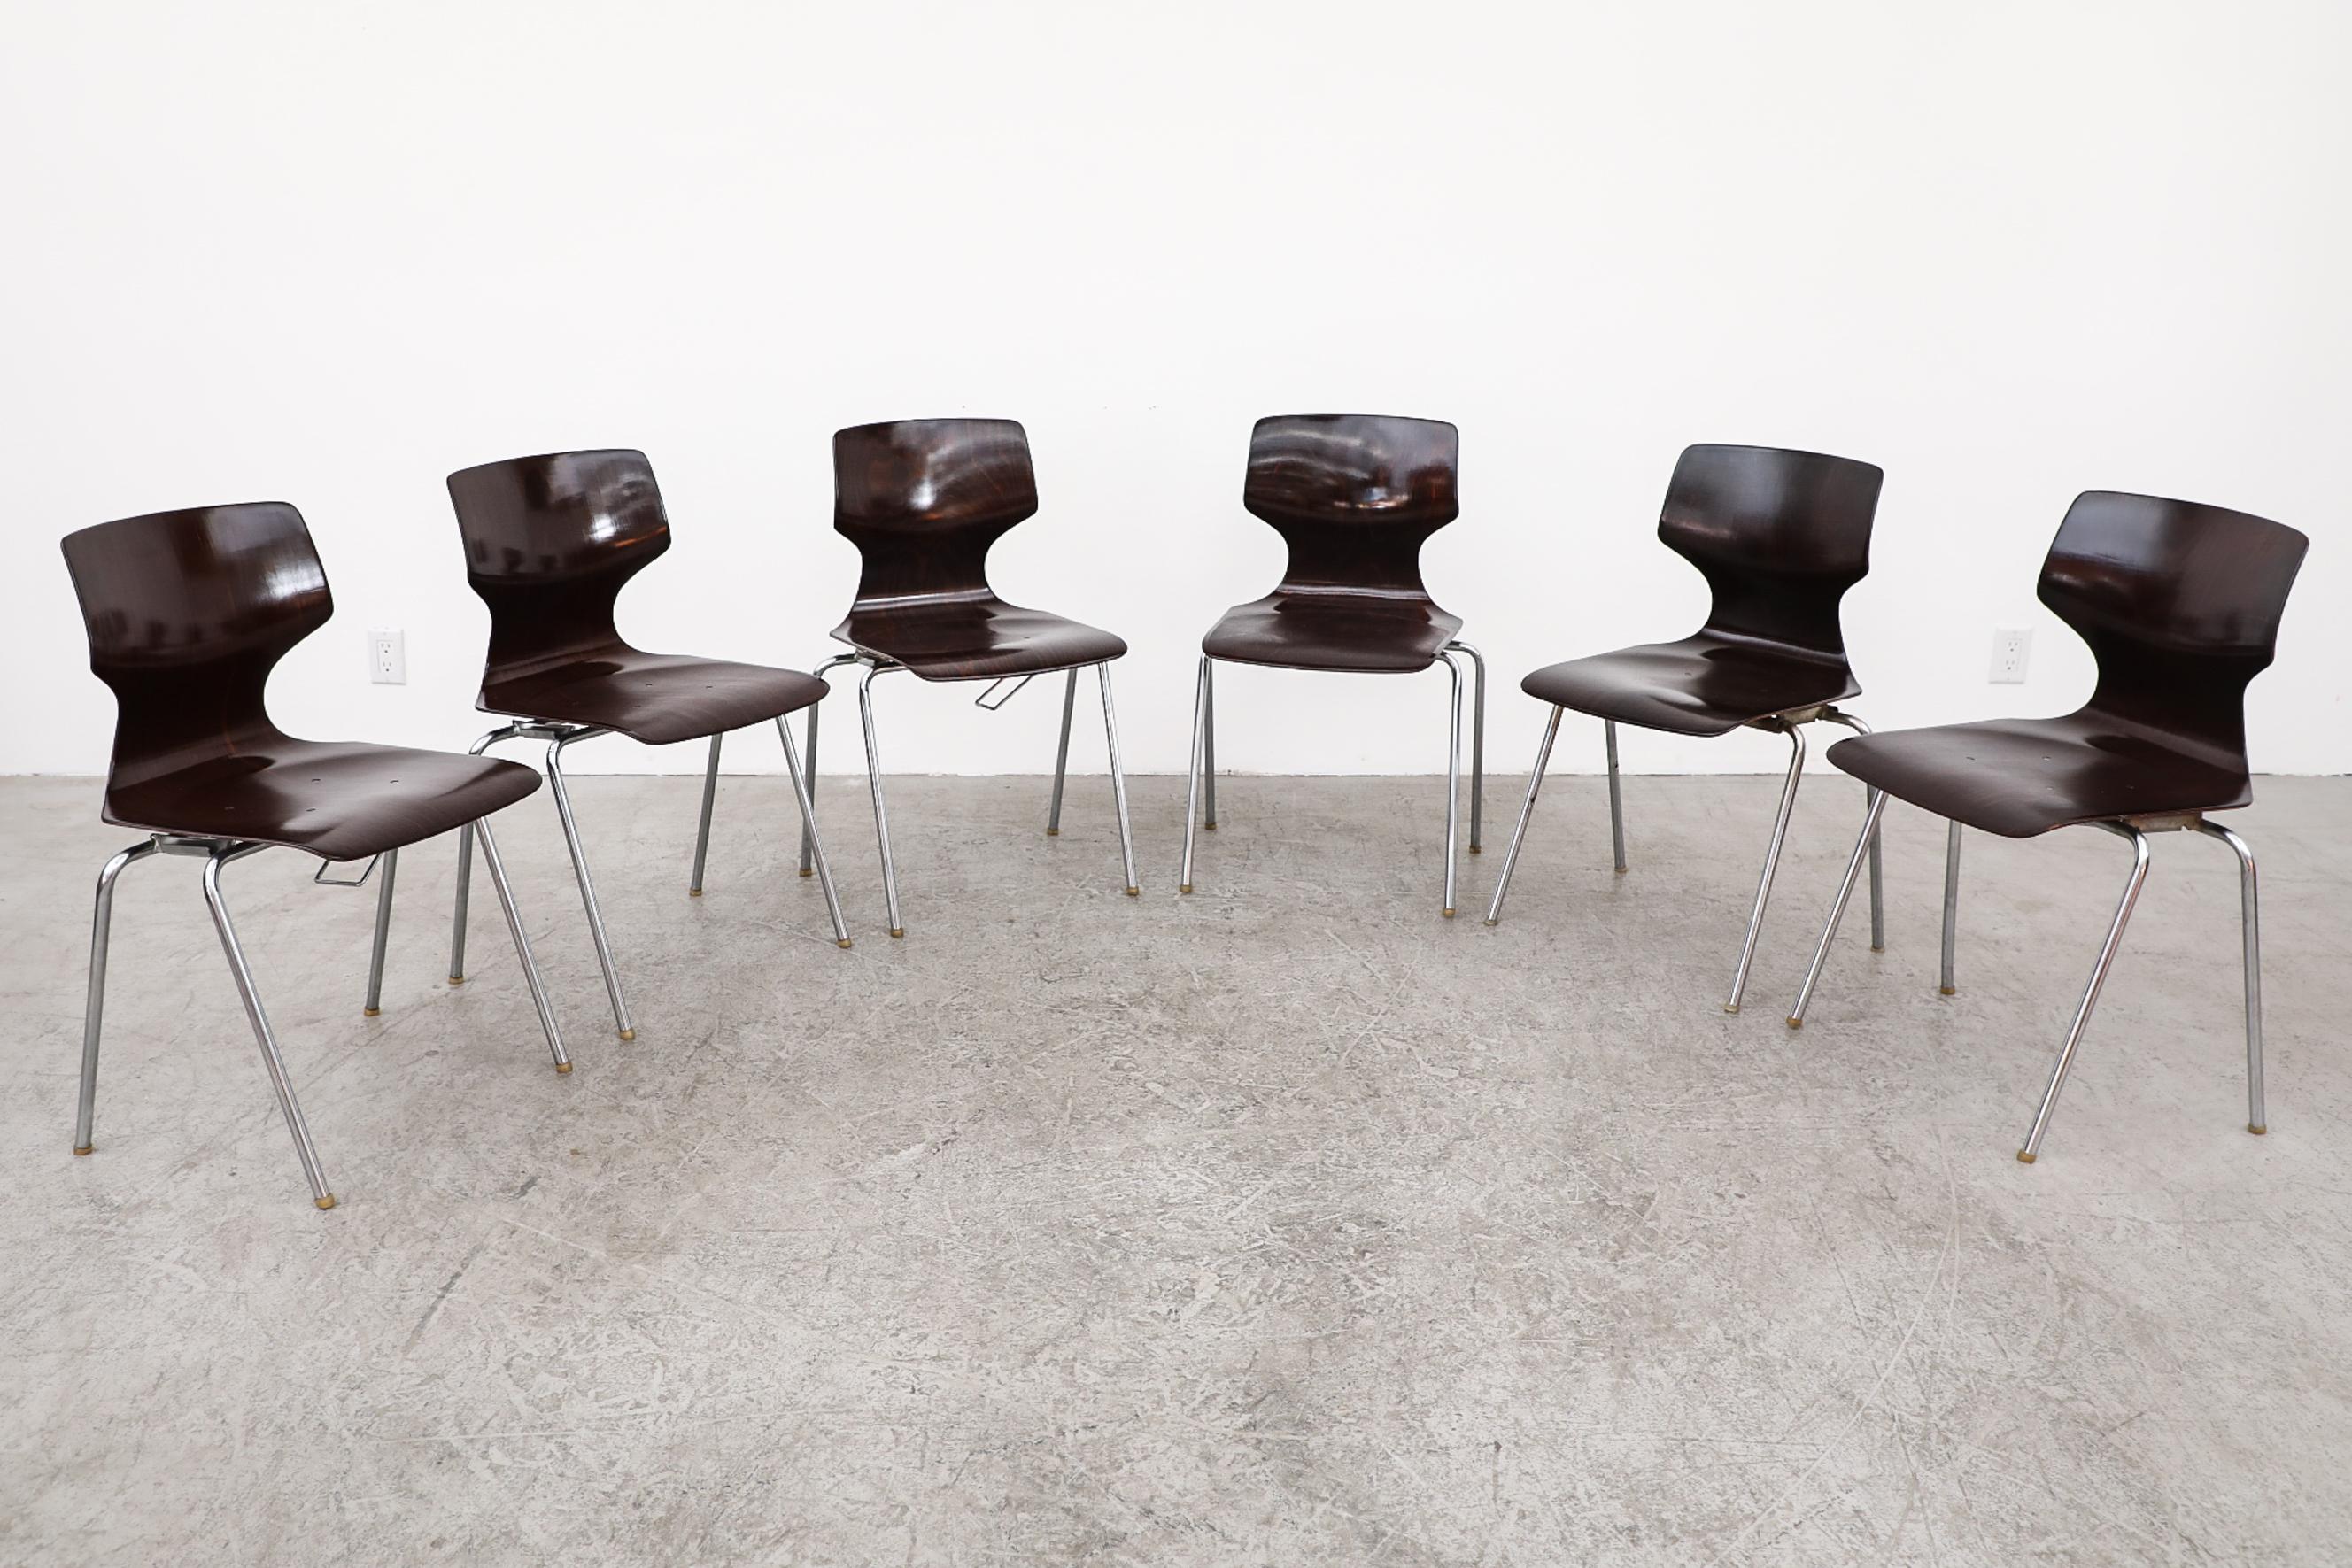 1970 Chaises empilables à dossier ailé, teintées foncées, par Flötotto. Ces chaises ont un siège à coque unique et des pieds chromés. Chaque chaise est munie d'un crochet sur un côté, ce qui permet de les attacher pour en faire un banc. La couleur